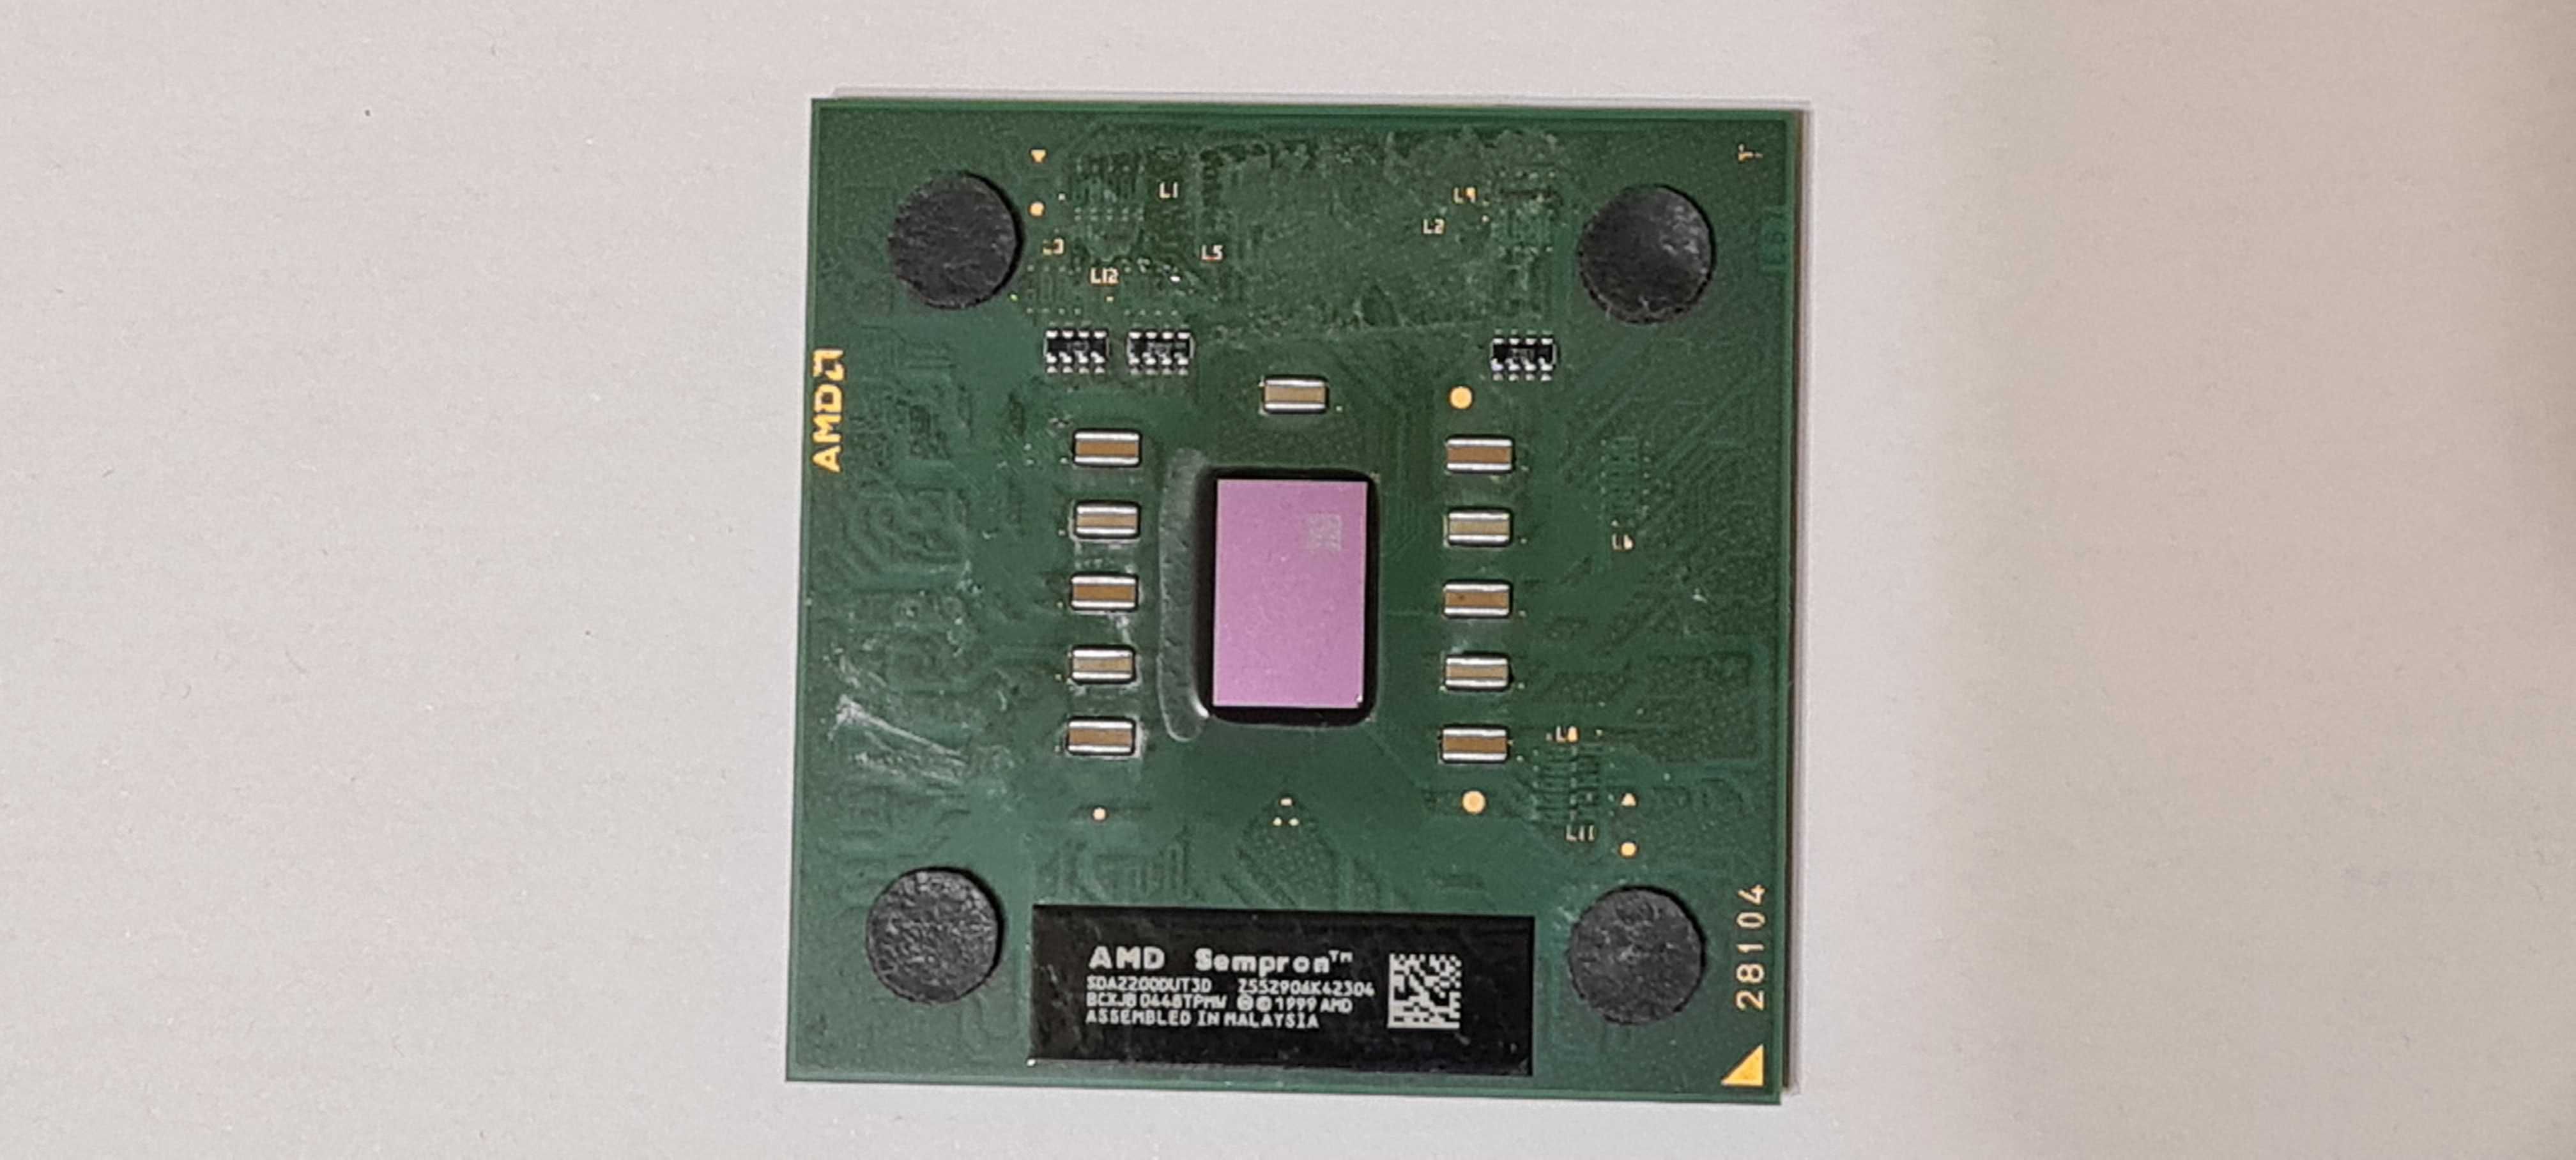 Procesor desktop Amd Sempron 2200+,1.5GHz,256/333,sochet A(462)